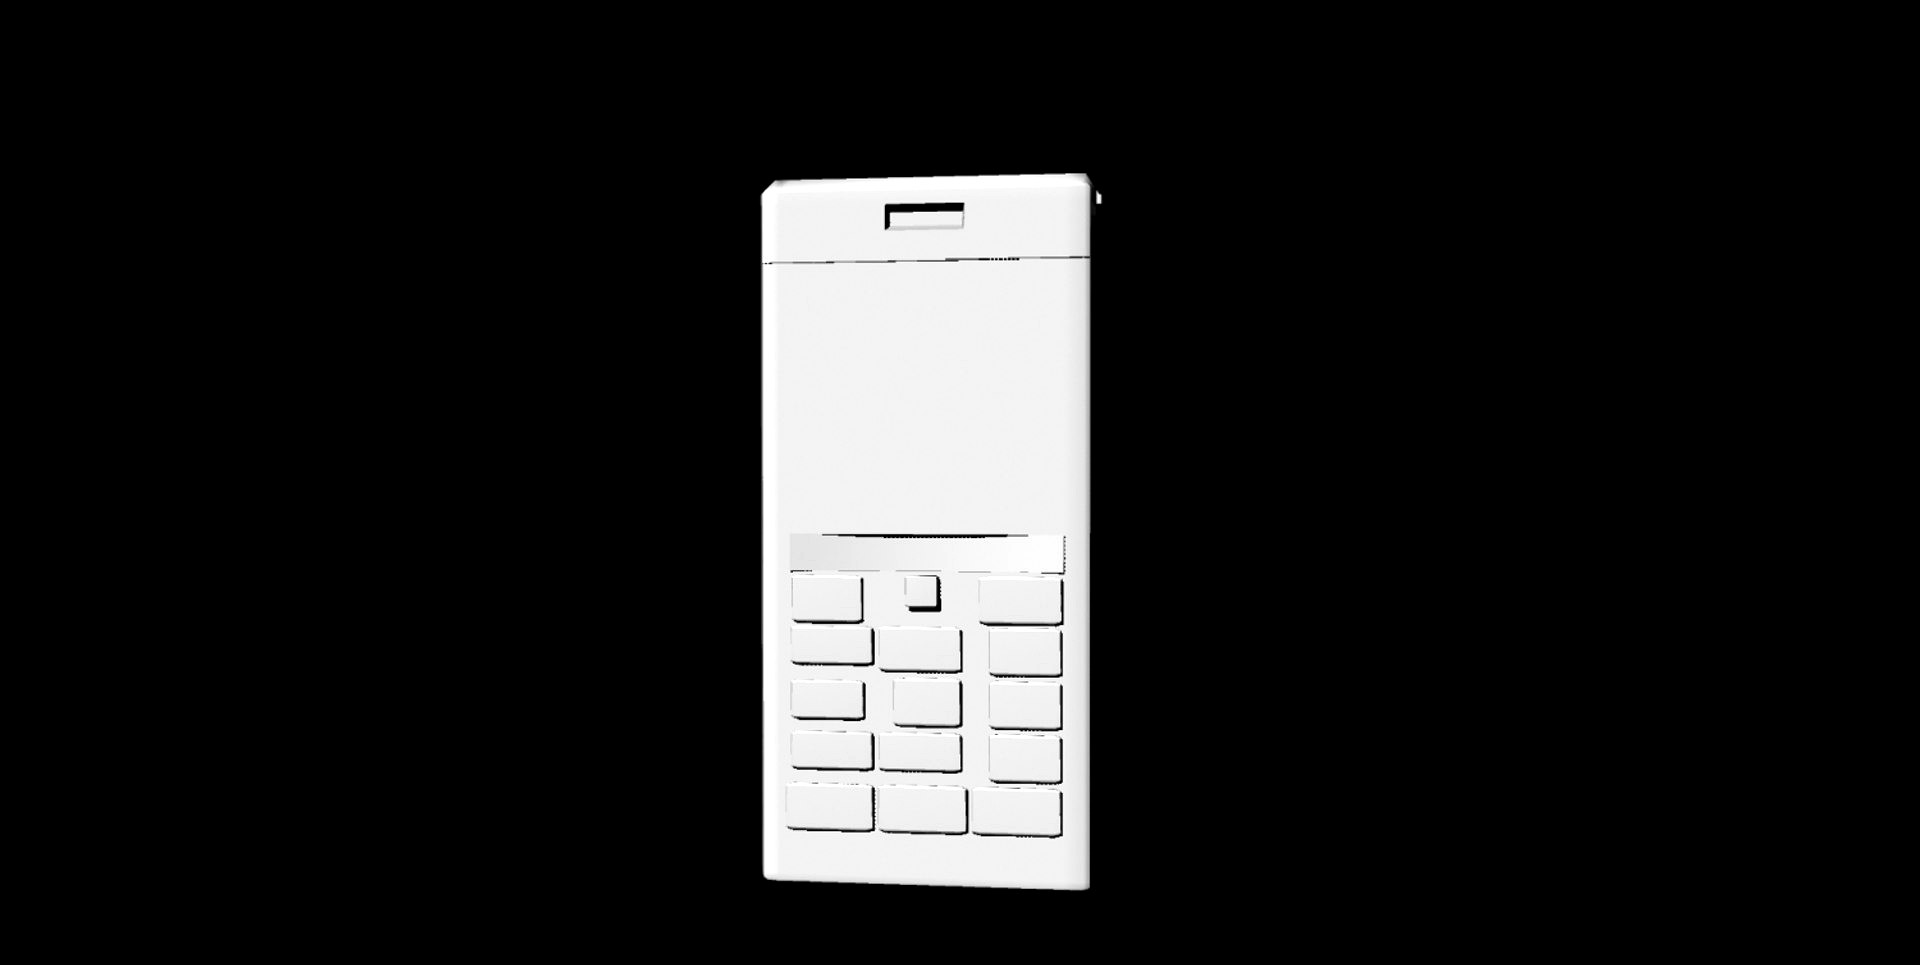 Keypad Mobile Phone untextured